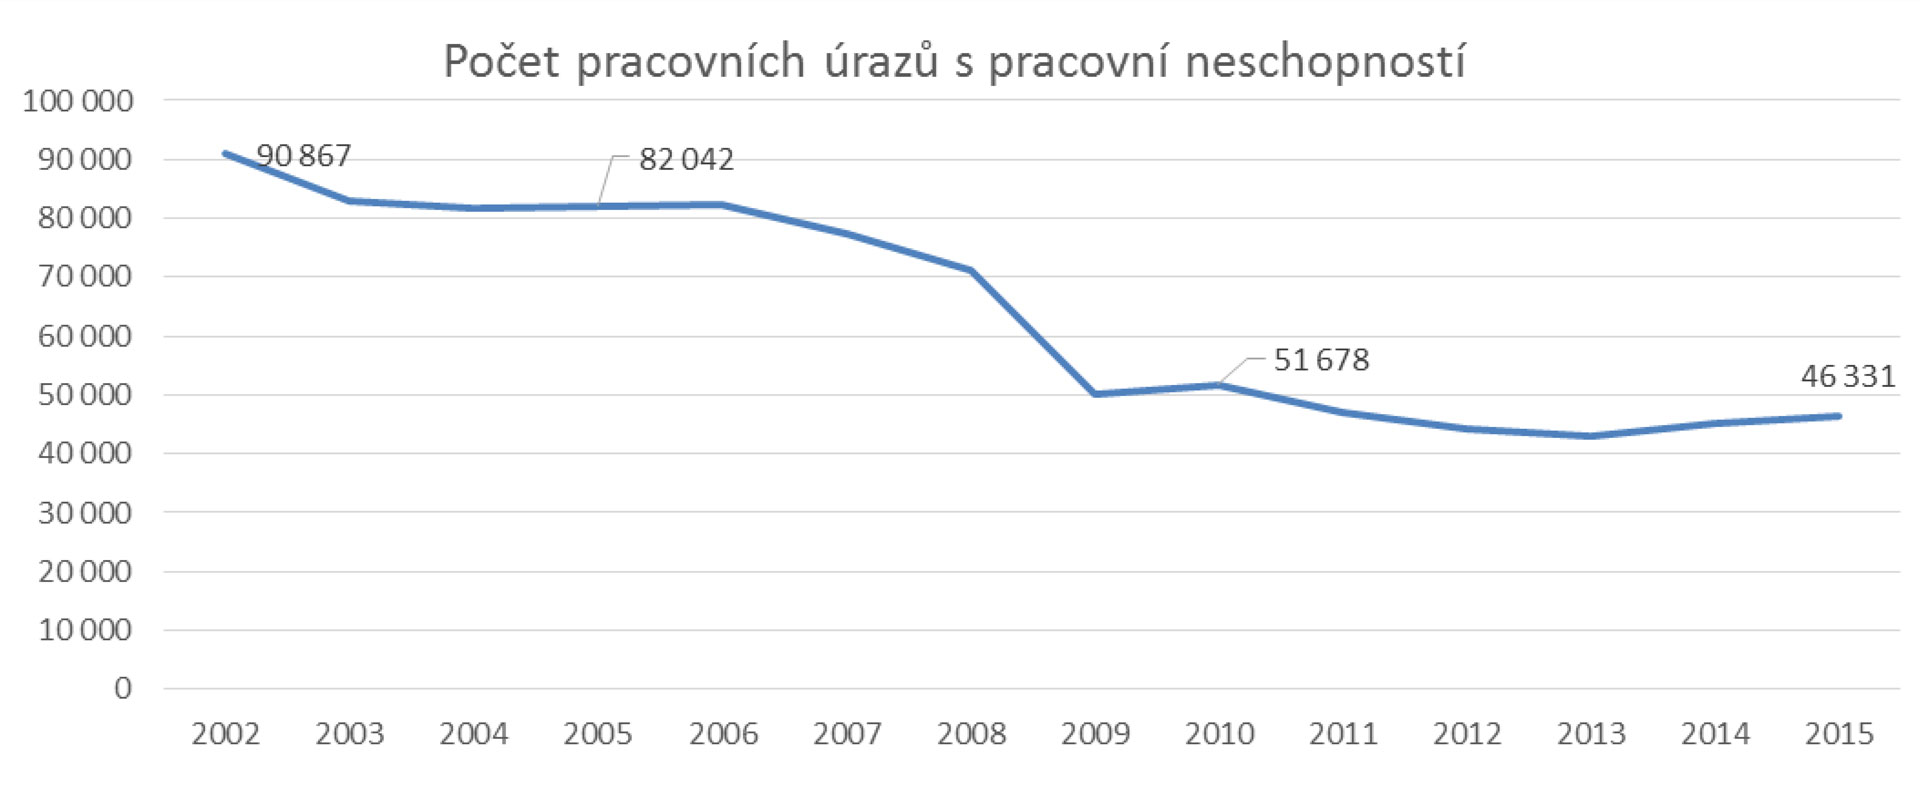 Pracovní úrazovost od roku 2002 do roku 2015 v ČR. Pracovní úrazy se snížily na polovinu